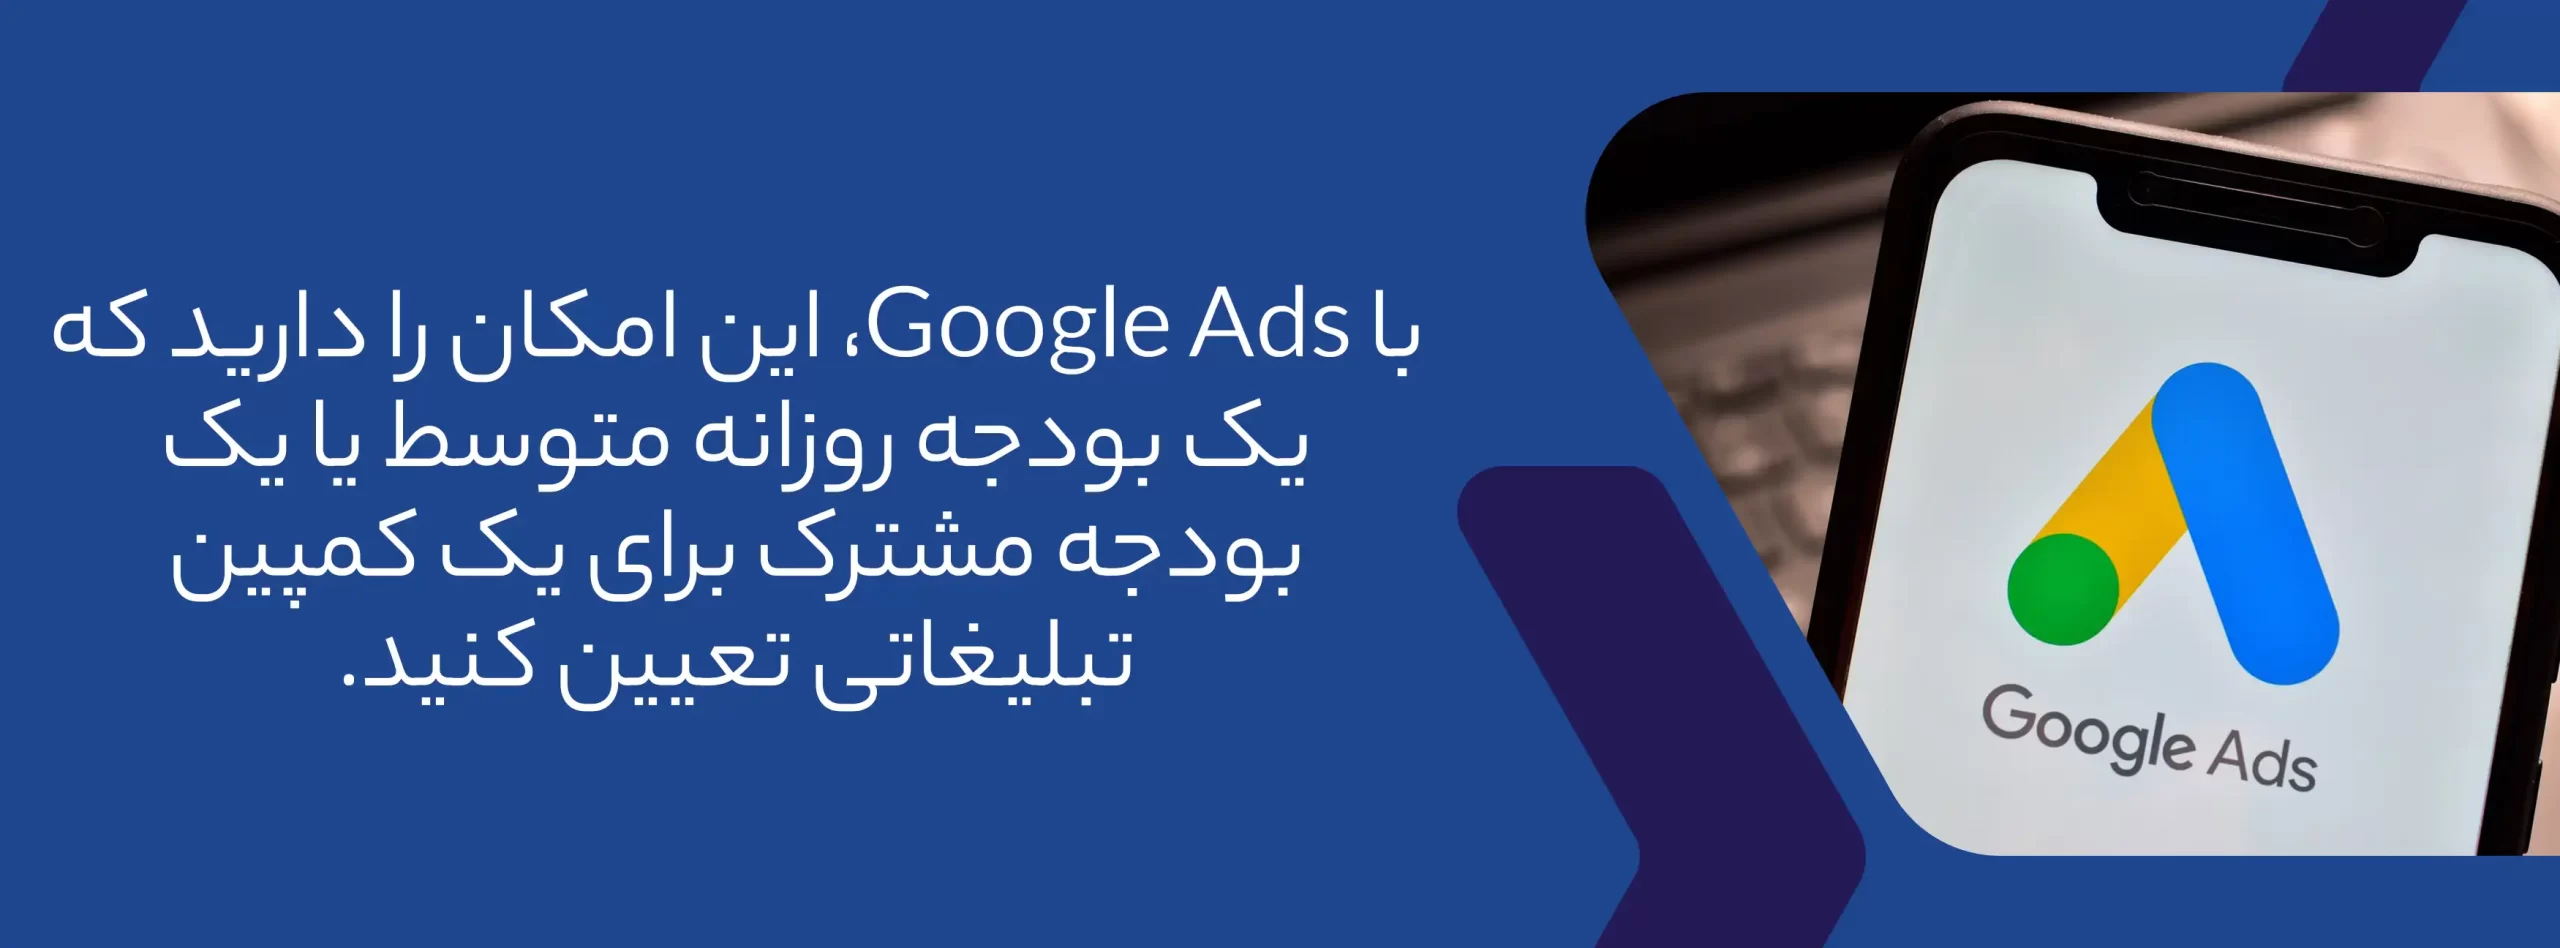 بودجه تبلیغاتی گوگل ادز